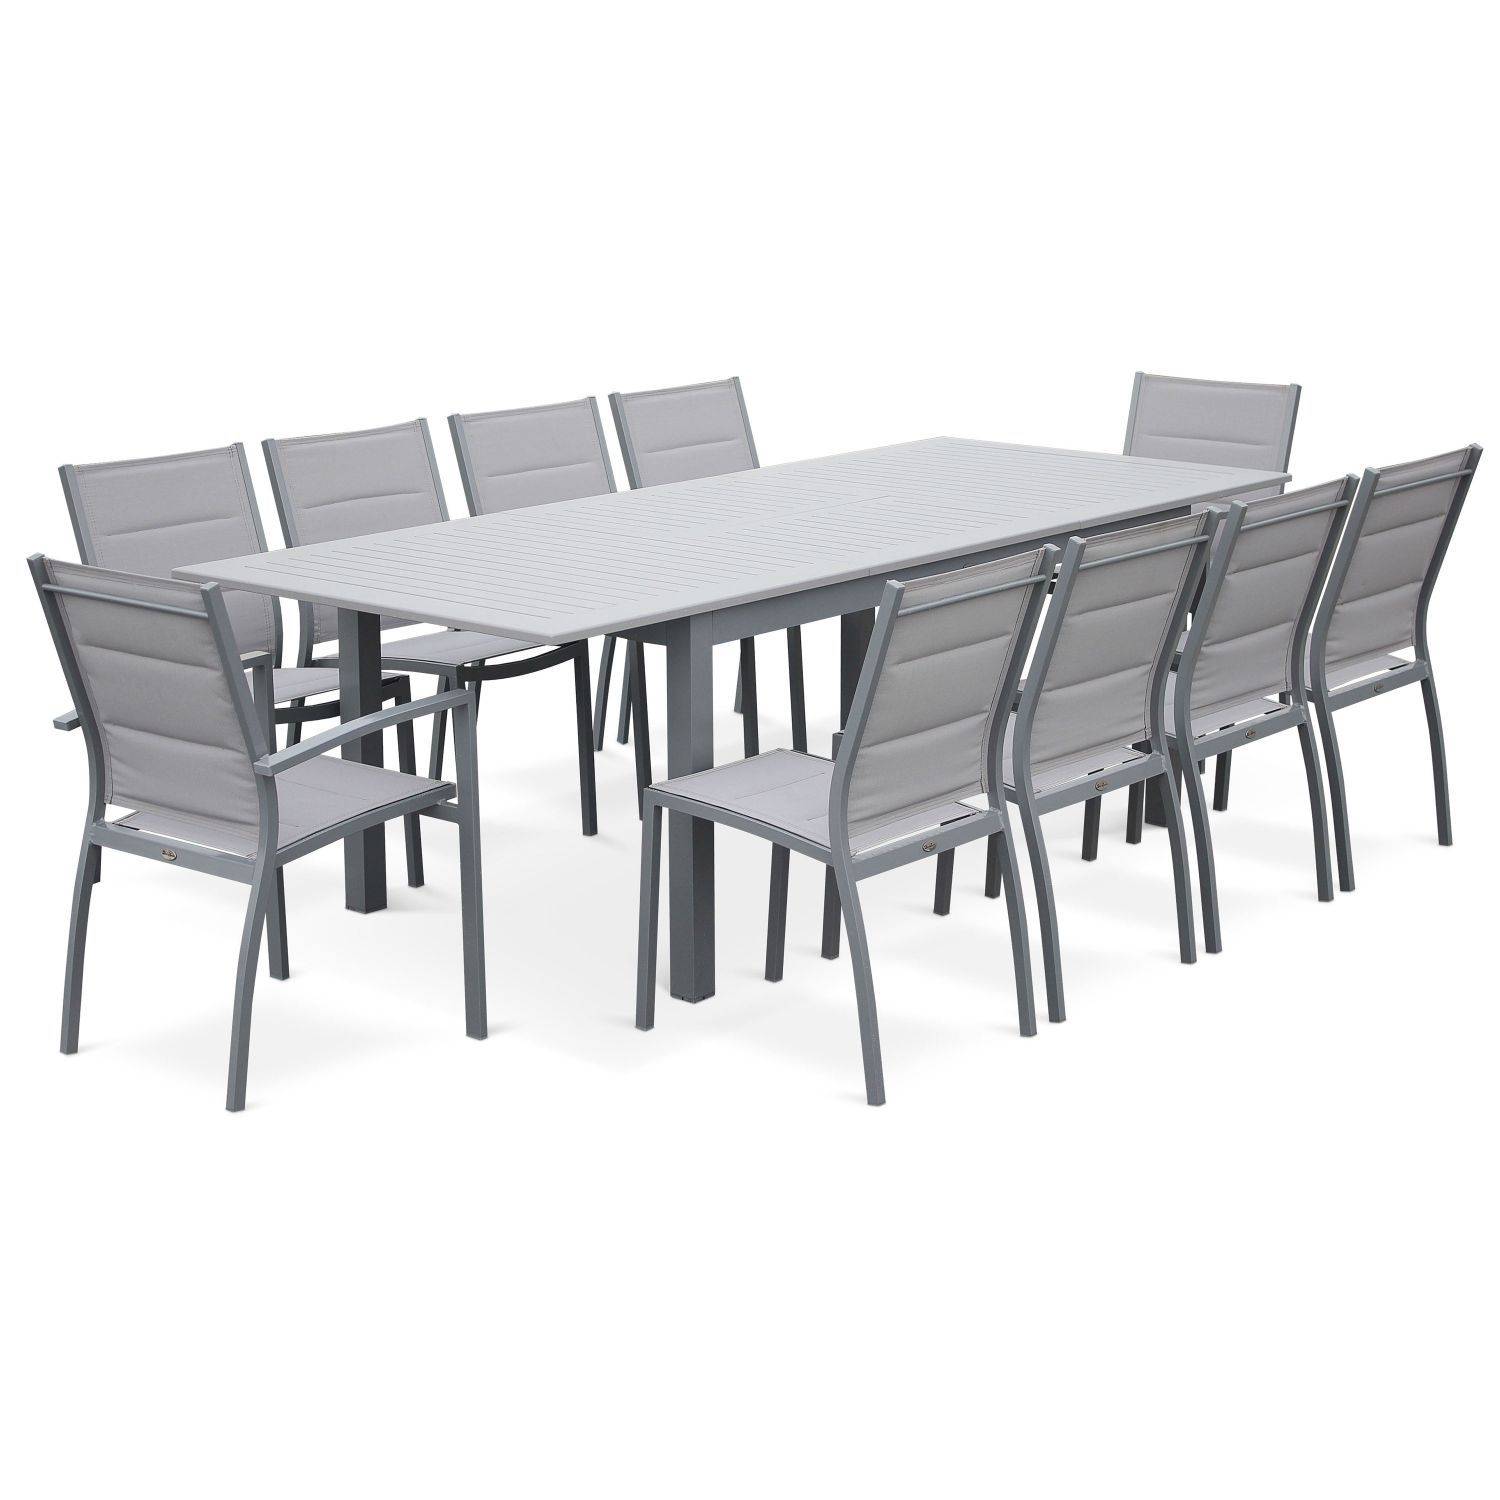 Set da giardino con tavolo allungabile - modello: Chicago, colore: Grigio - Tavolo in alluminio, dimensioni: 175/245cm con prolunga e 8 sedute in textilene Photo3